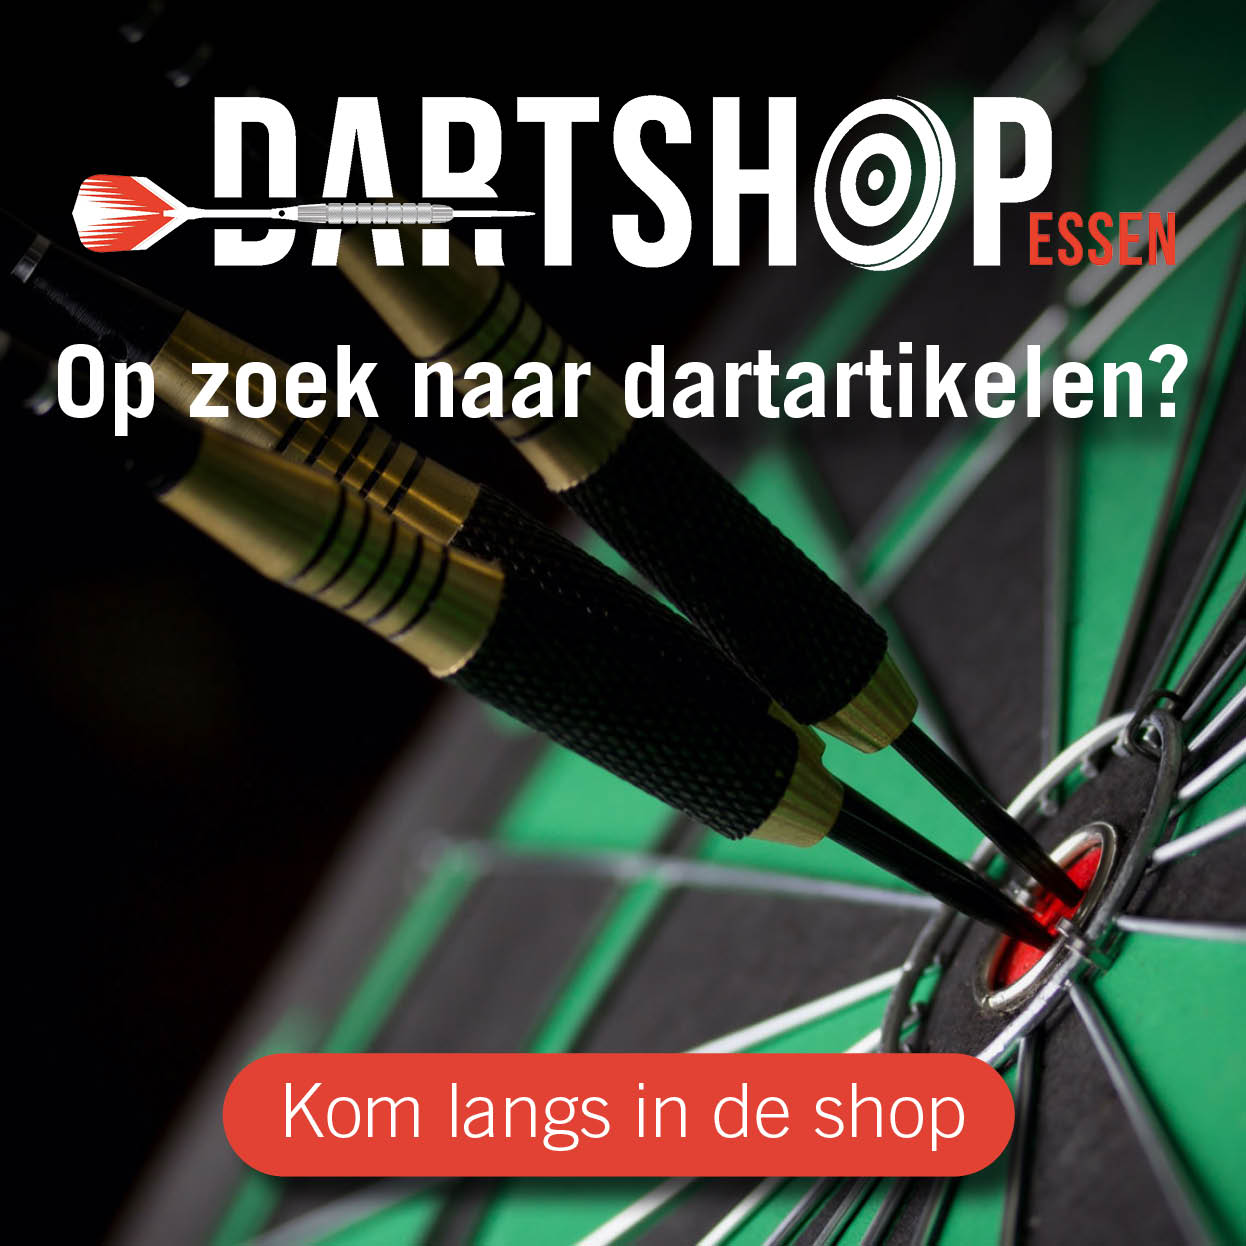 10974 KVG Service (pro darts) (voormalig Dartshop Essen)